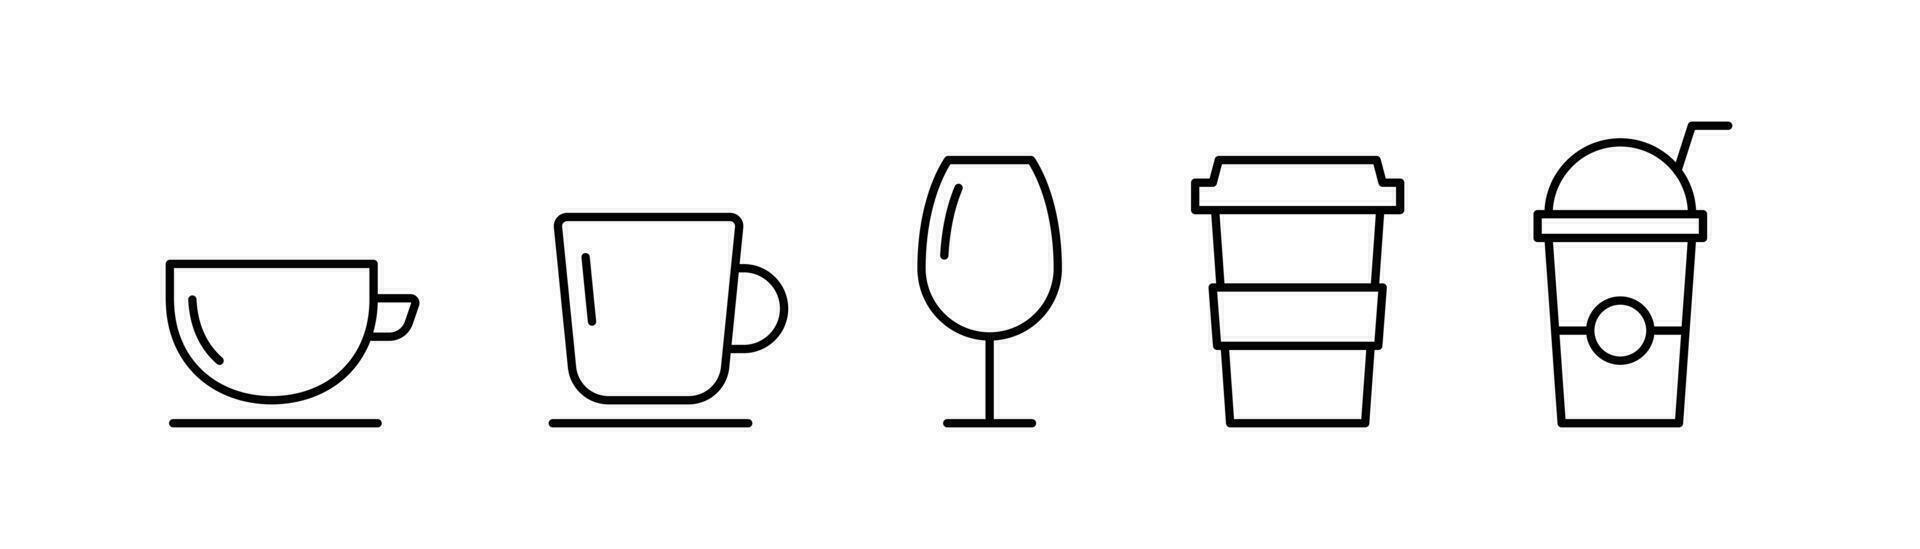 kaffe kopp ikon i linje. te kopp symbol. juice ikon i linje. råna symbol i översikt. kaffe råna i linjär. stock vektor illustration